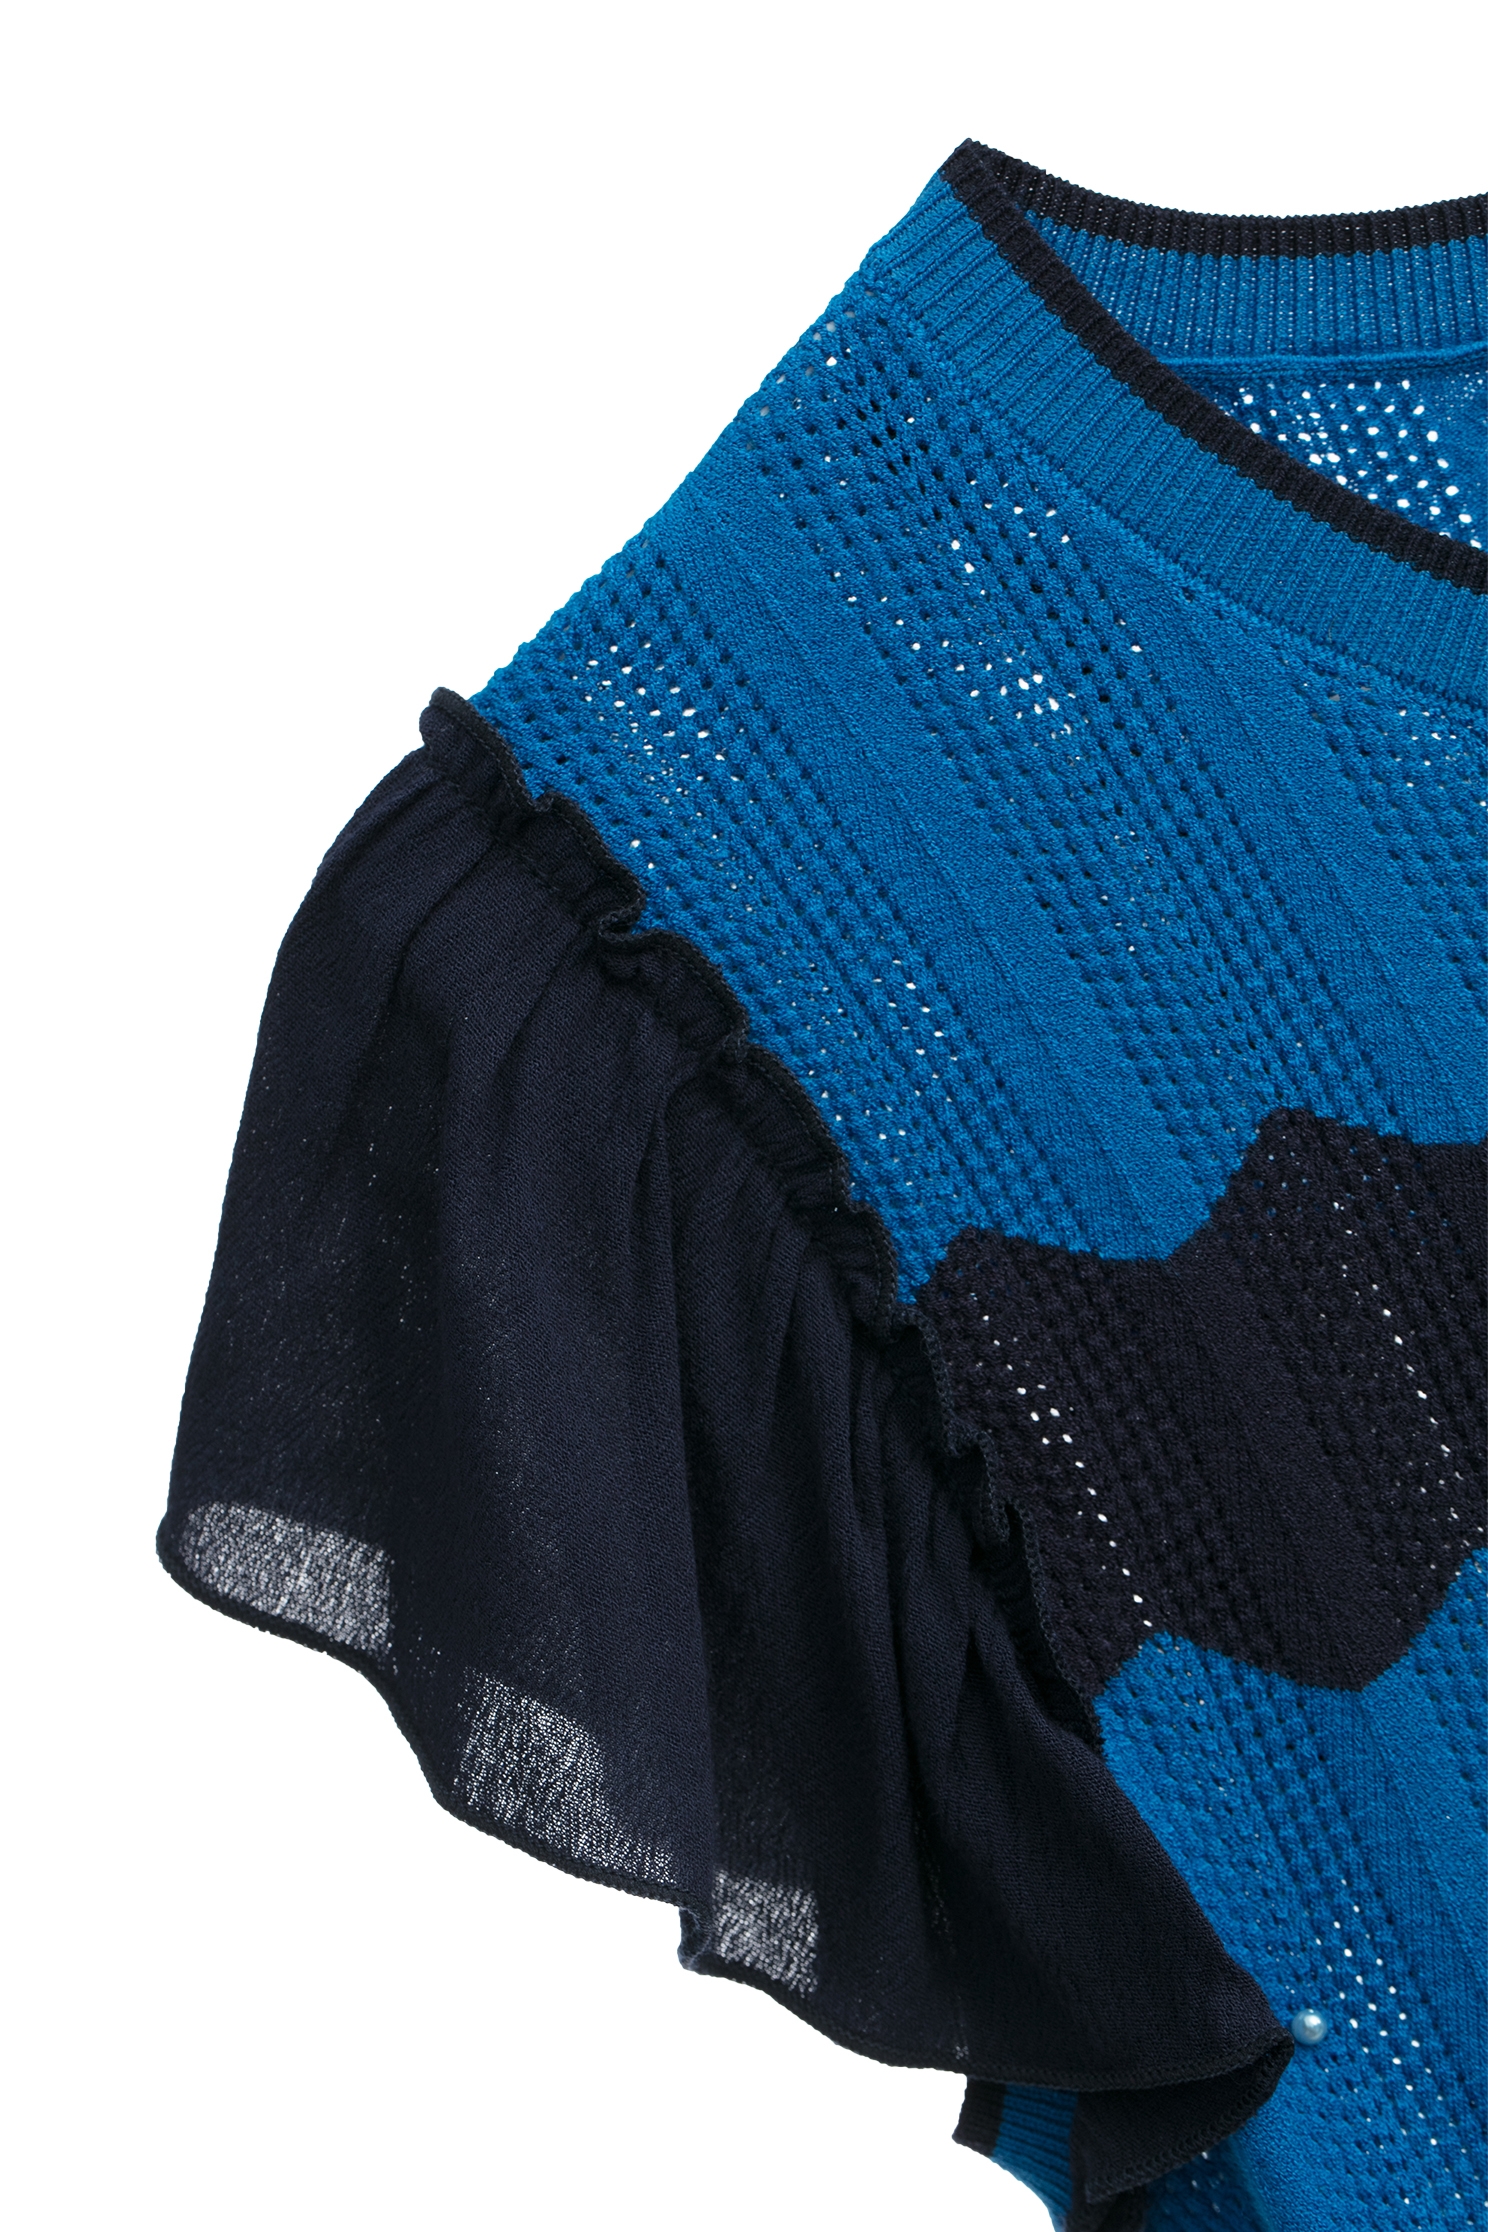 藍色波浪配條小蓋袖針織上衣藍色波浪配條小蓋袖針織上衣,一般背心,上衣,春夏穿搭,荷葉,針織,針織上衣